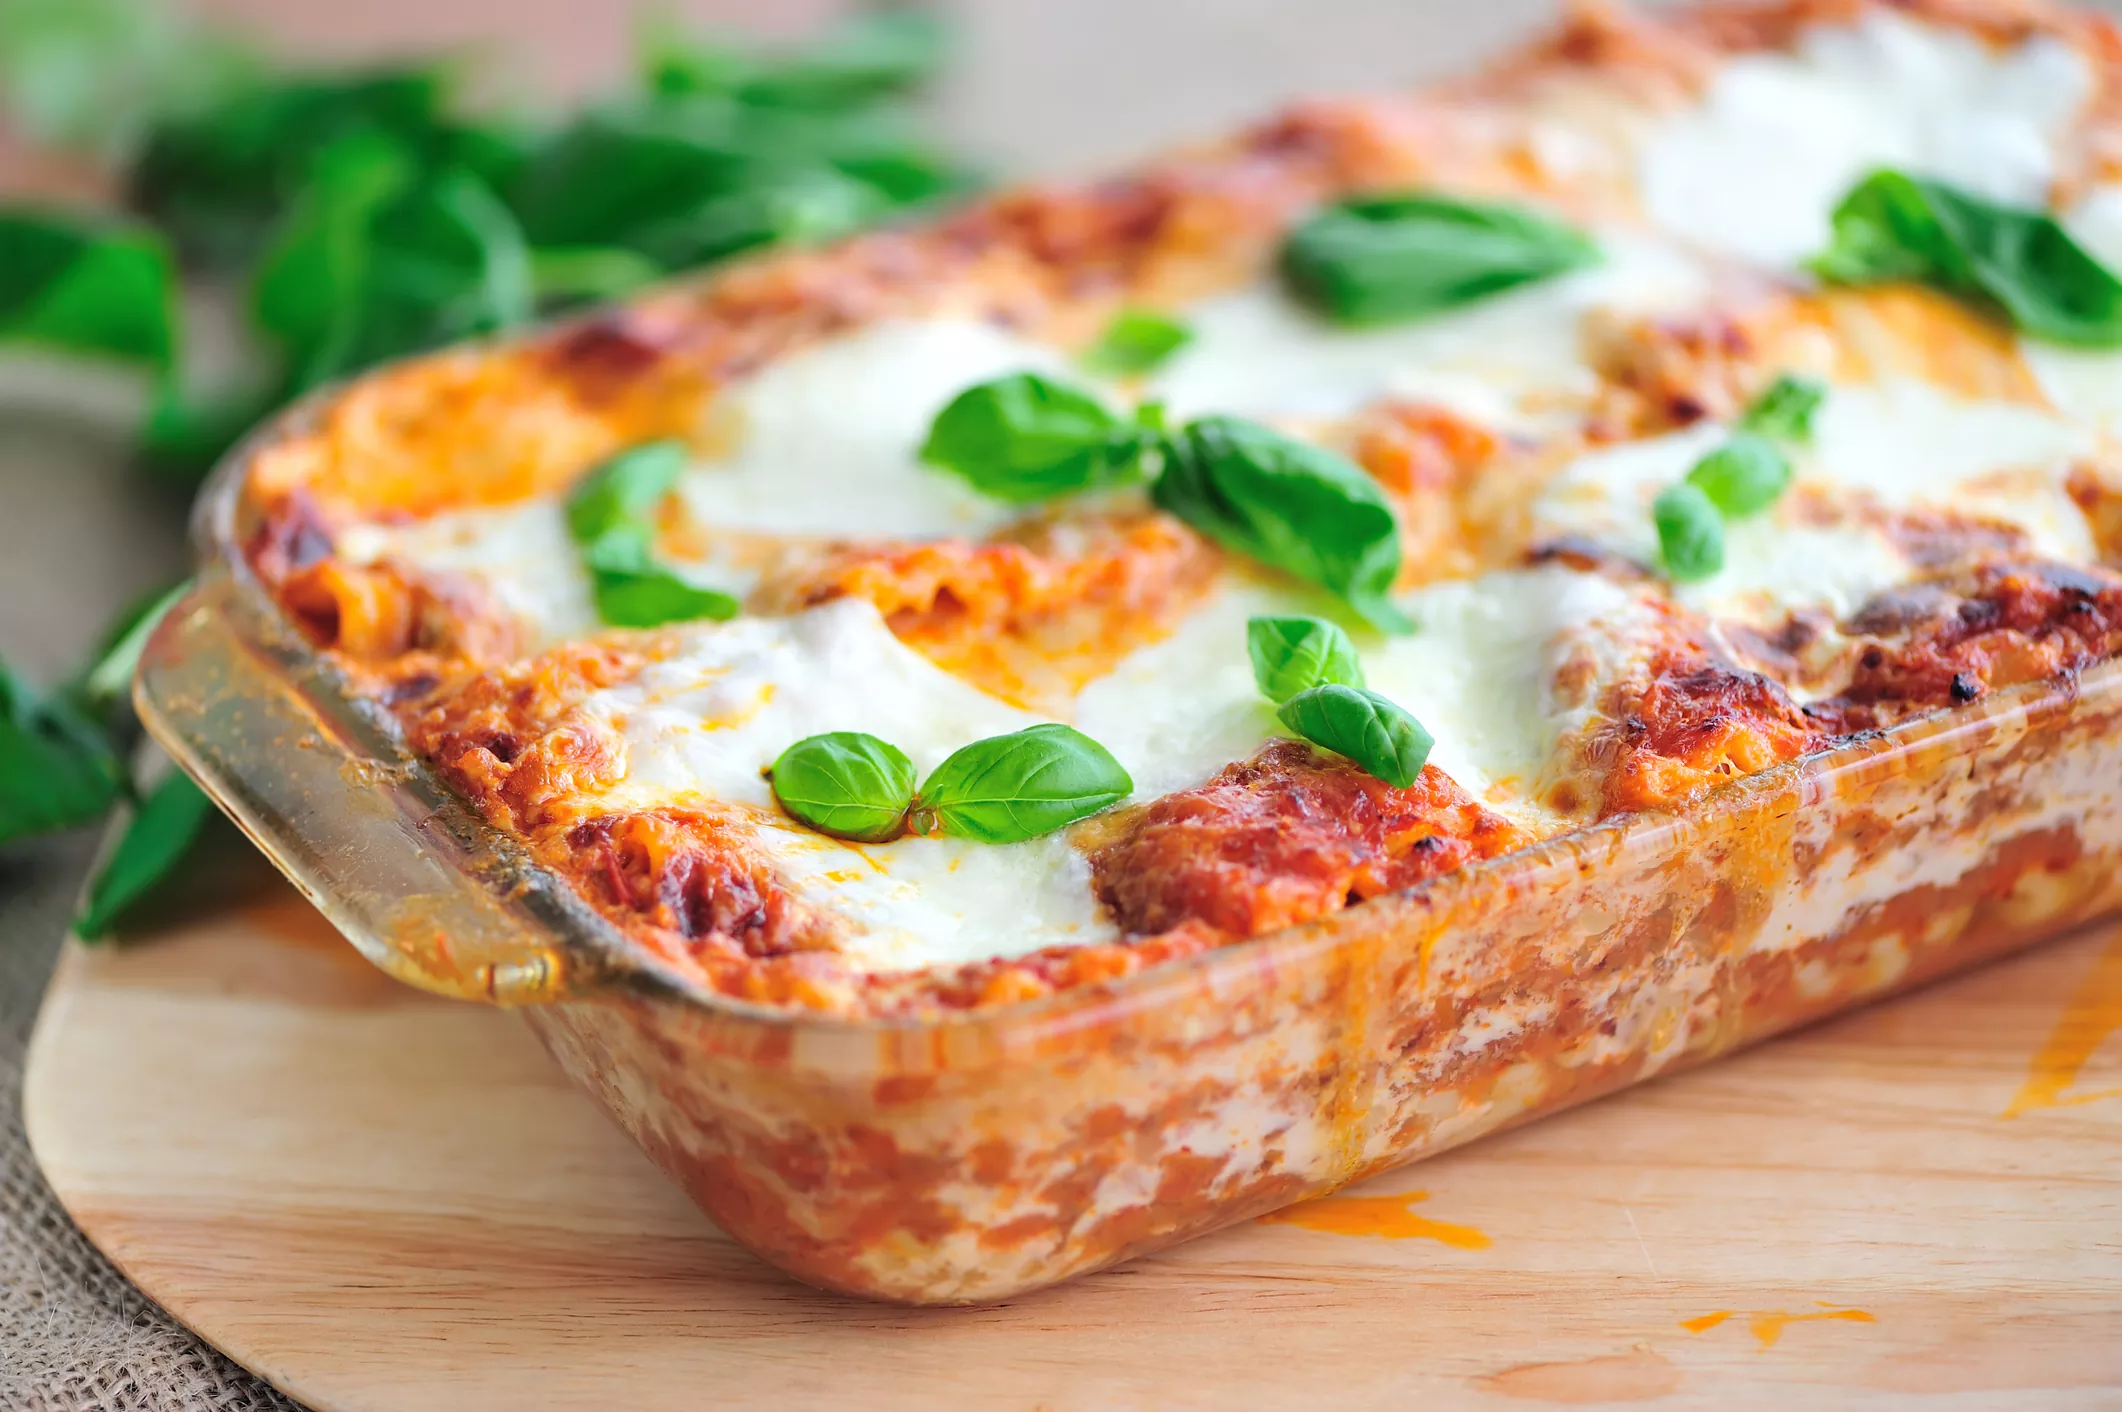 Healthy, Decadent Best Vegan Lasagna Recipe Ever | Villa Kali Ma